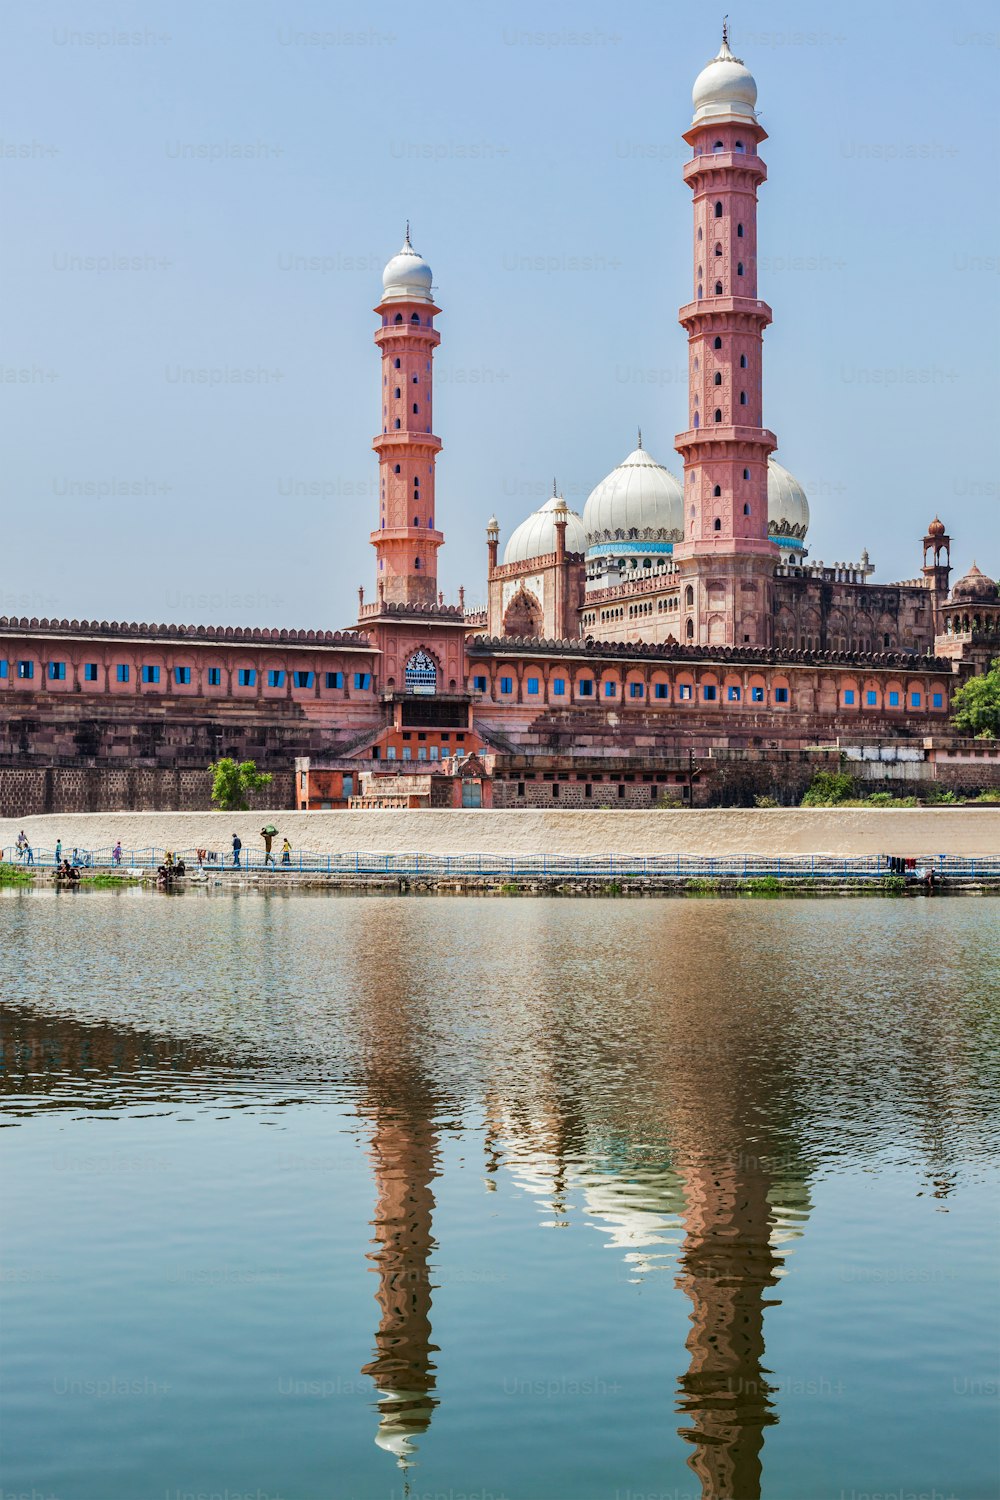 Taj-ul-Masajid (also spelled Taj-ul-Masjid) - the largest mosque in India. Bhopal, Madhya Pradesh state, India